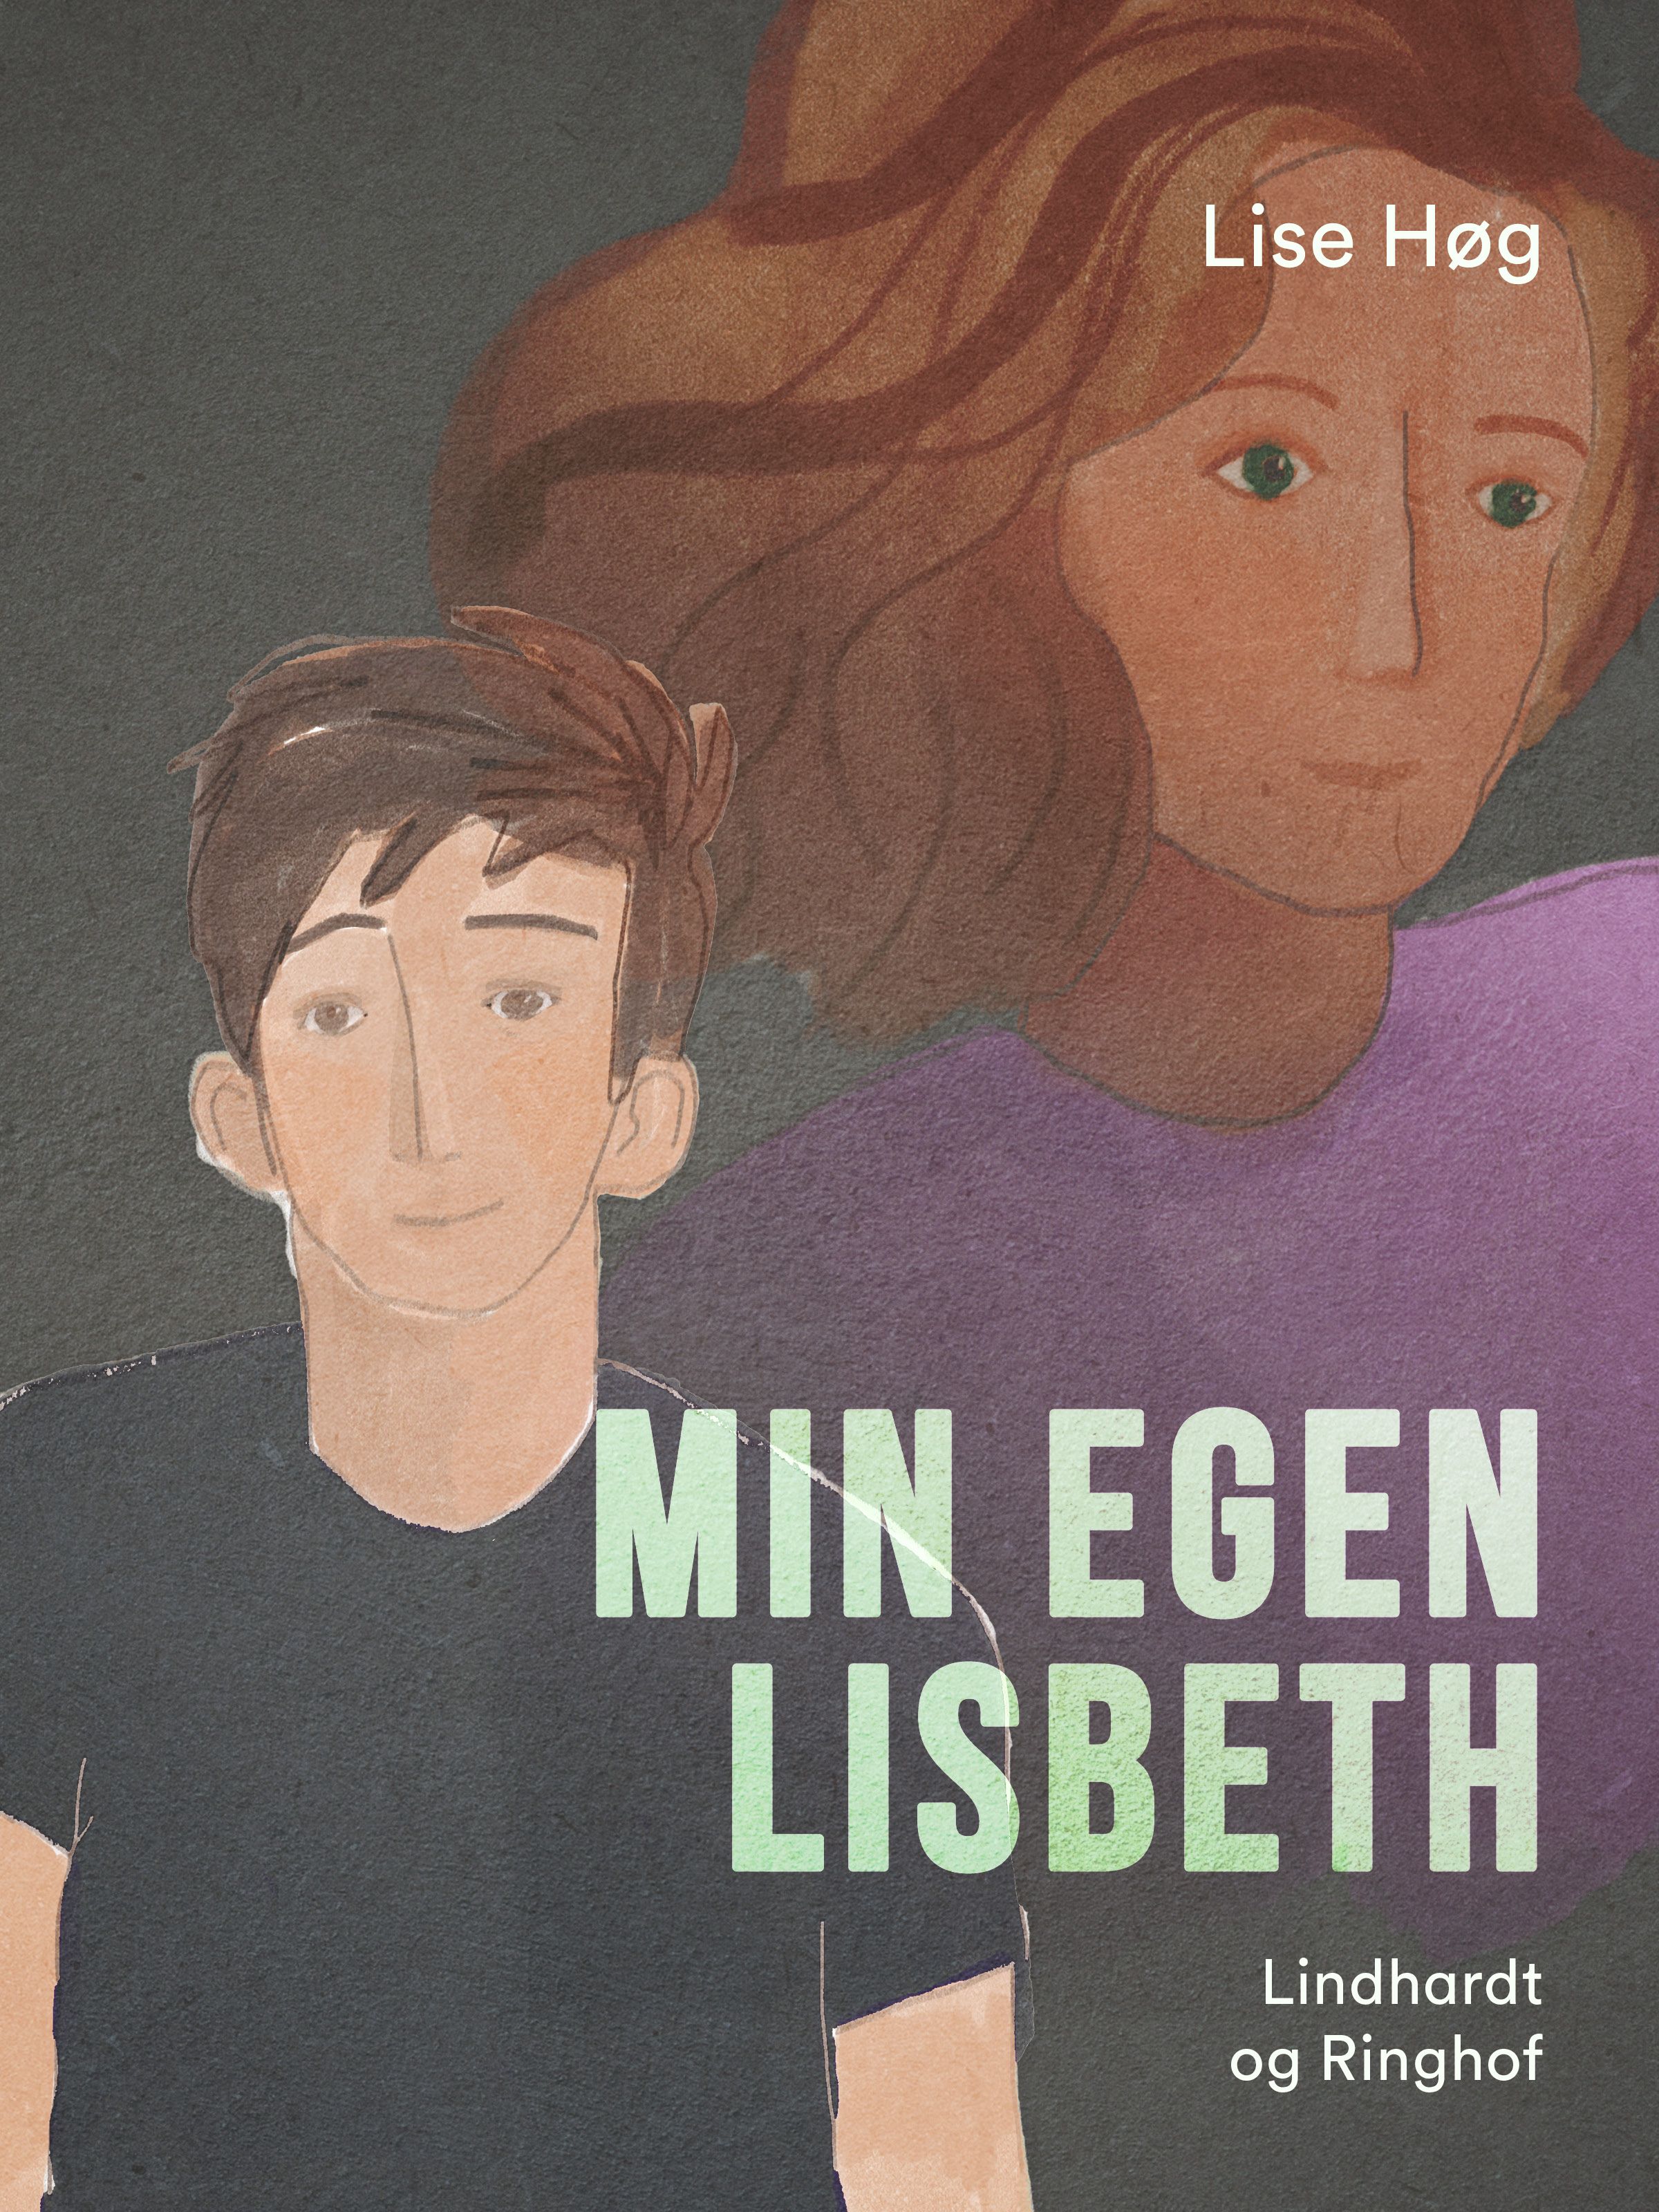 Min egen Lisbeth, e-bok av Lise Høg